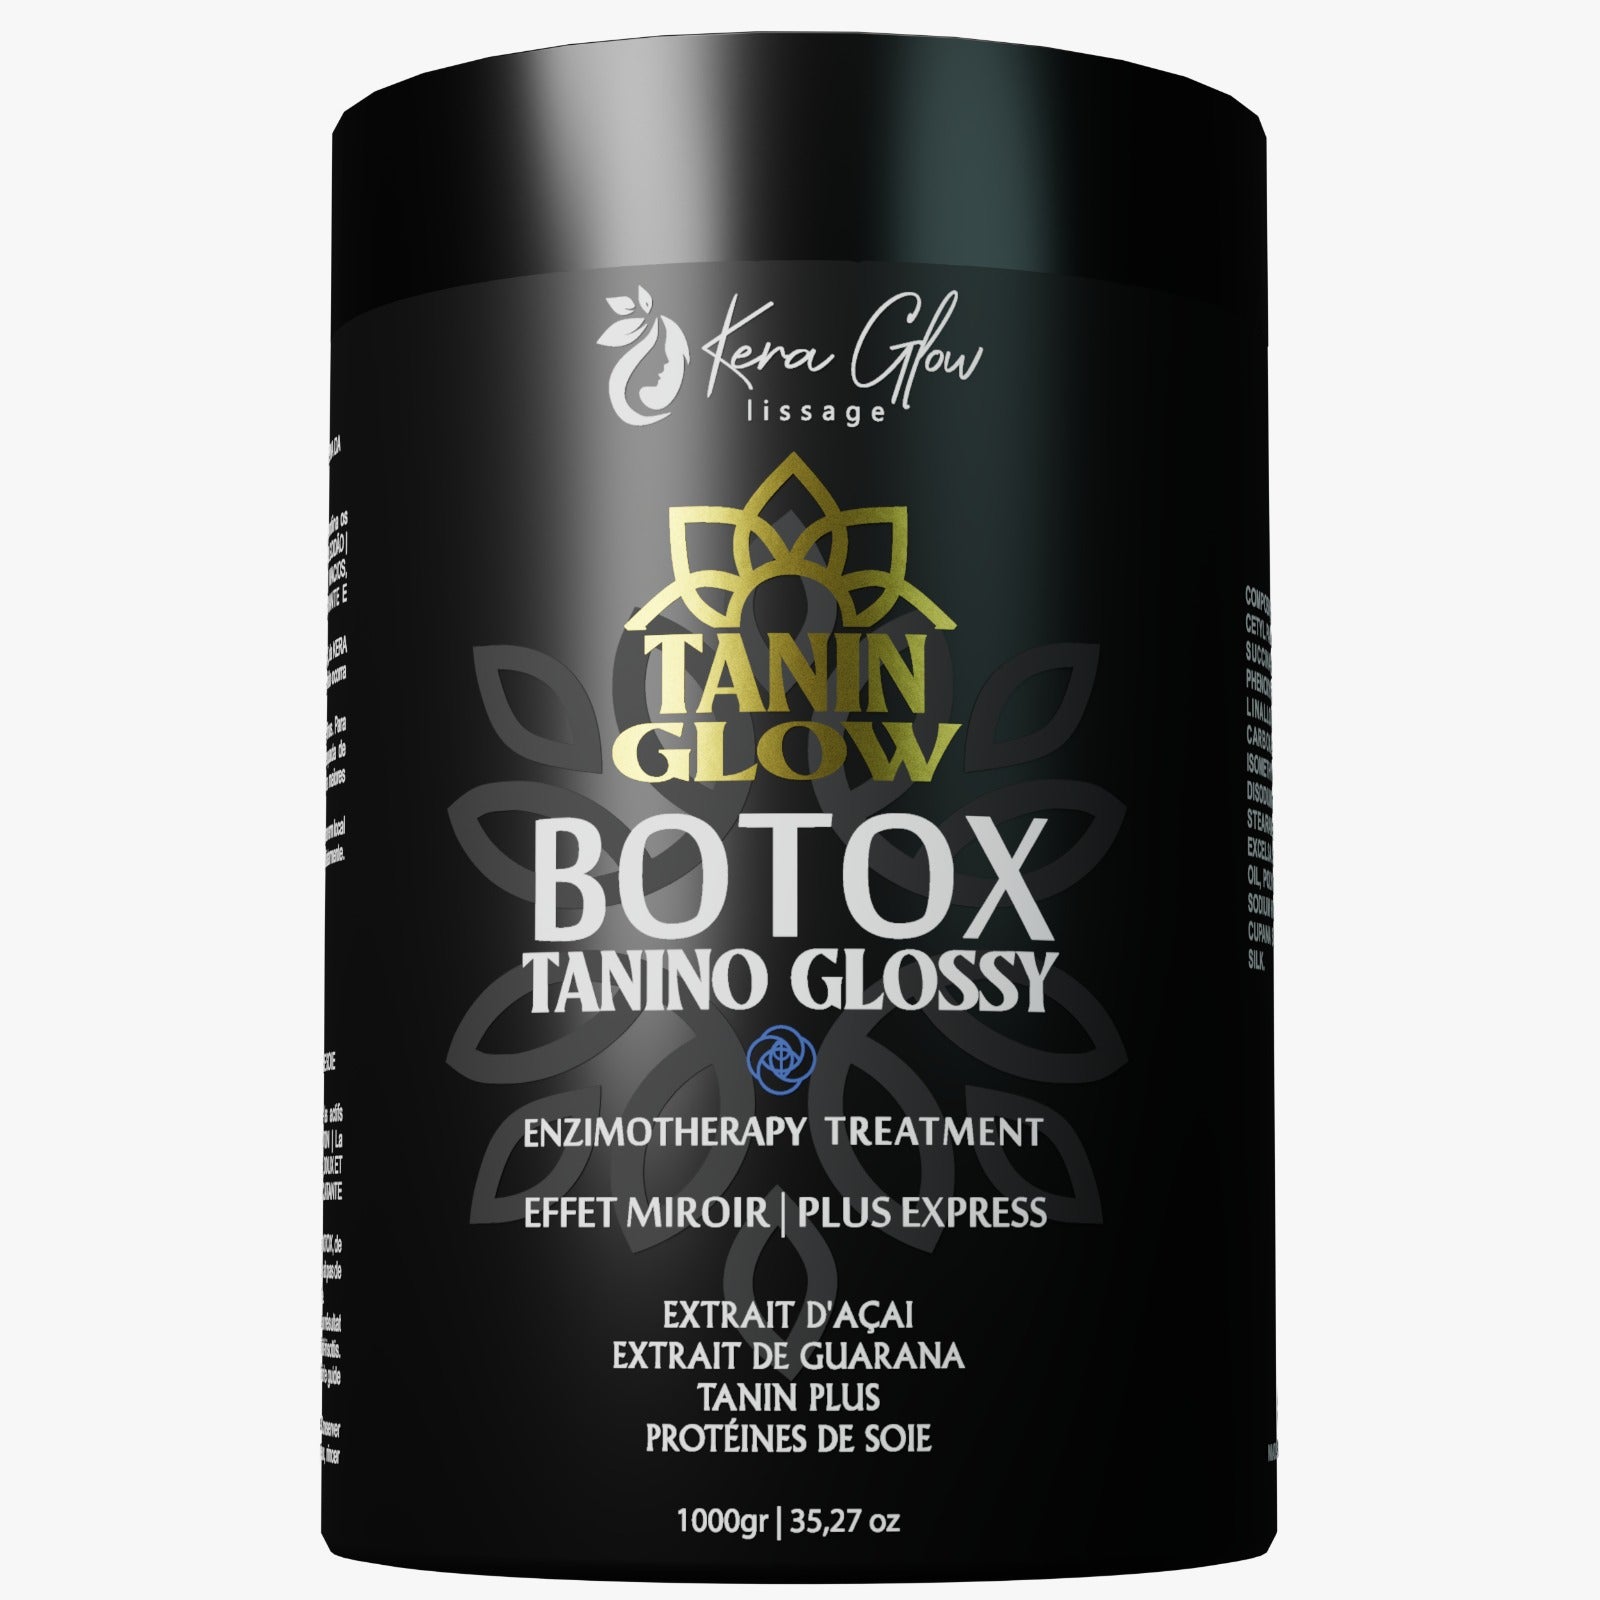 BOTOX Tanin gloss Guaraná proteine de soie KERAGLOW 1kg ® Traitement Révolutionnaire